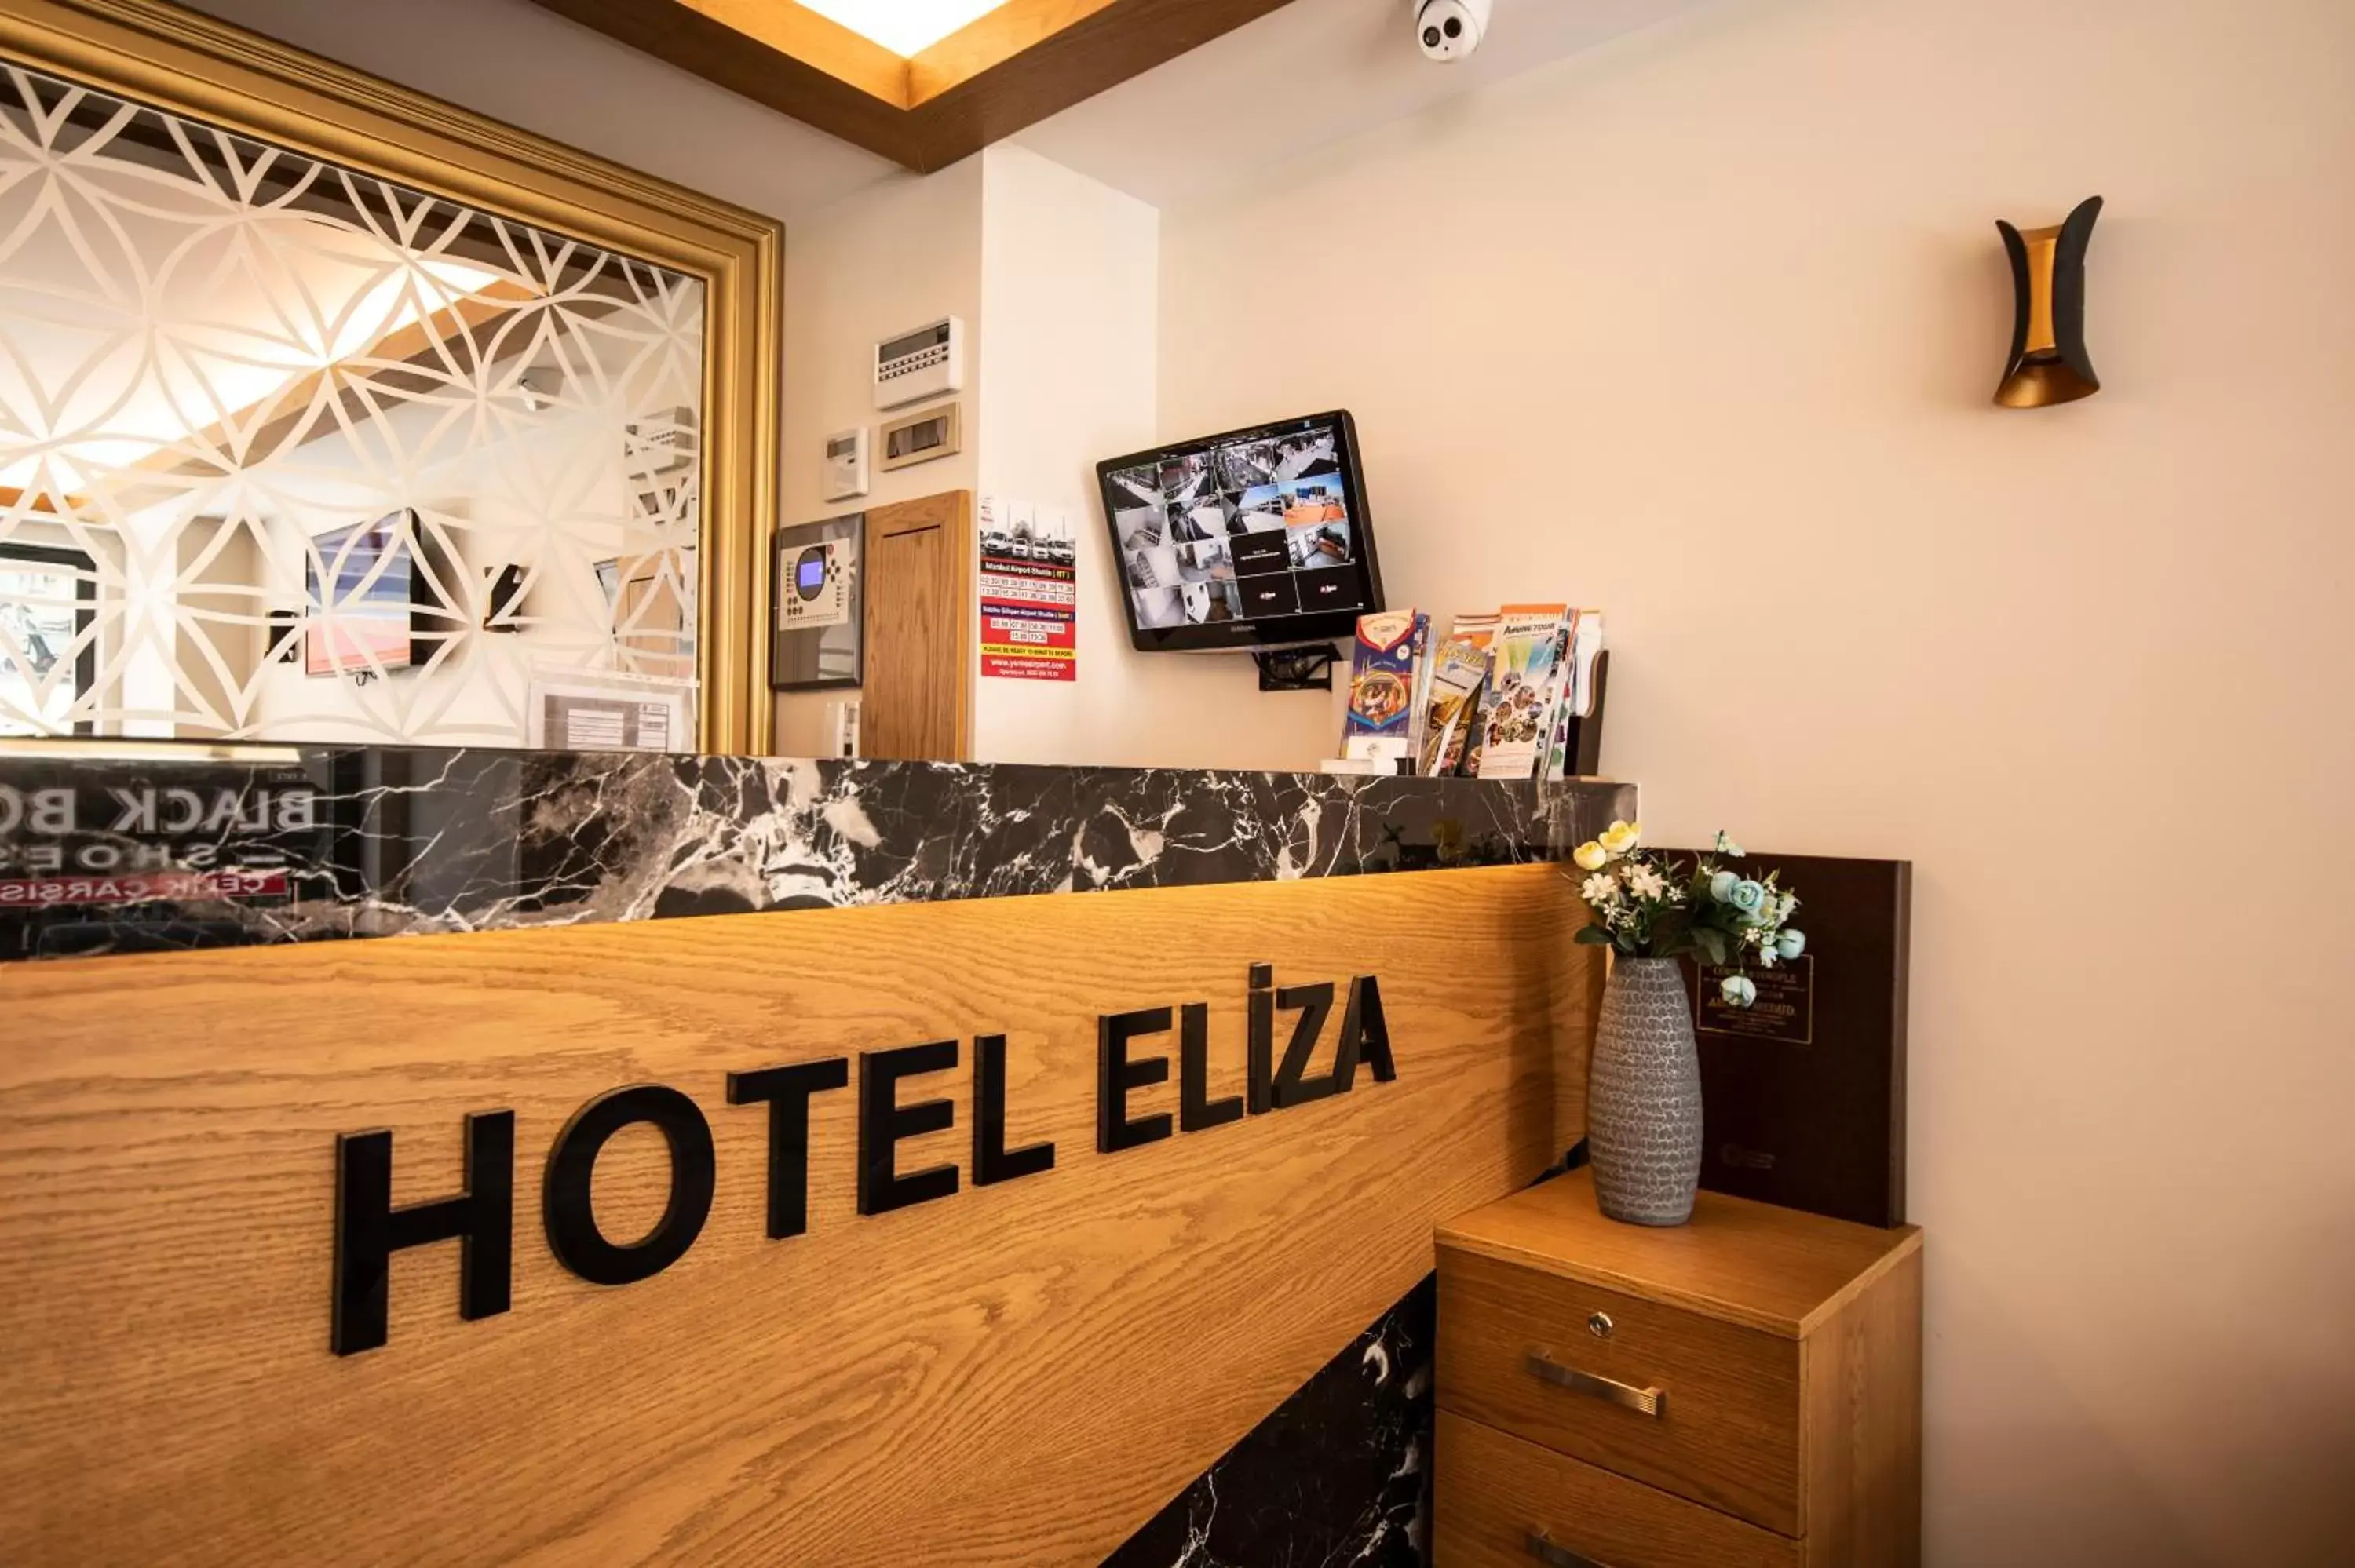 Lobby or reception in Eliza Hotel